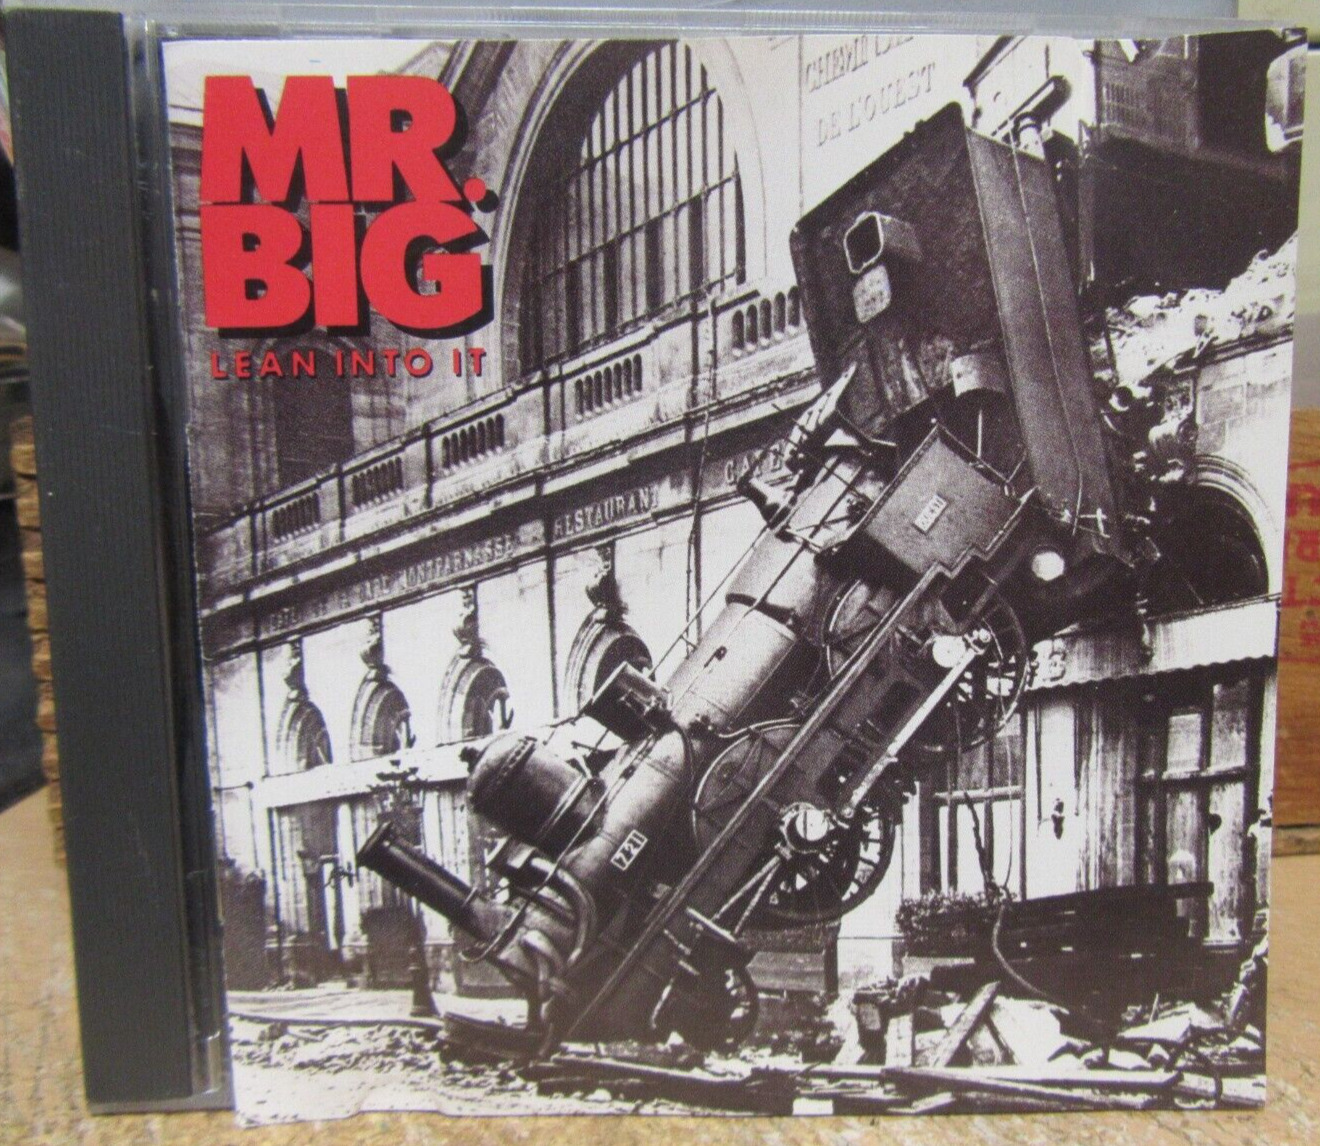 MR. BIG CD "LEAN INTO IT" 1991 ATLANTIC - PAUL GILBERT - BILLY SHEEHAN- RARE